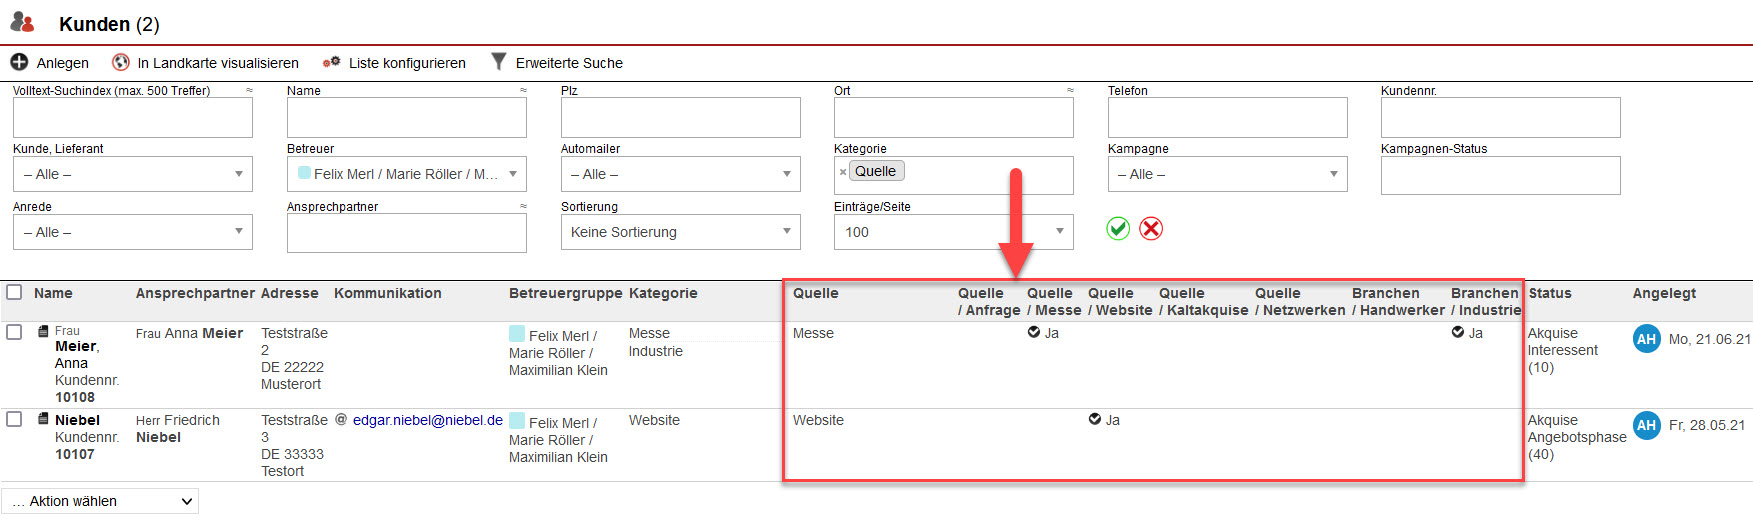 Screenshot geöffnete Kundenübersicht mit markierten Spalten bzgl. der verschiedenen Kategorien